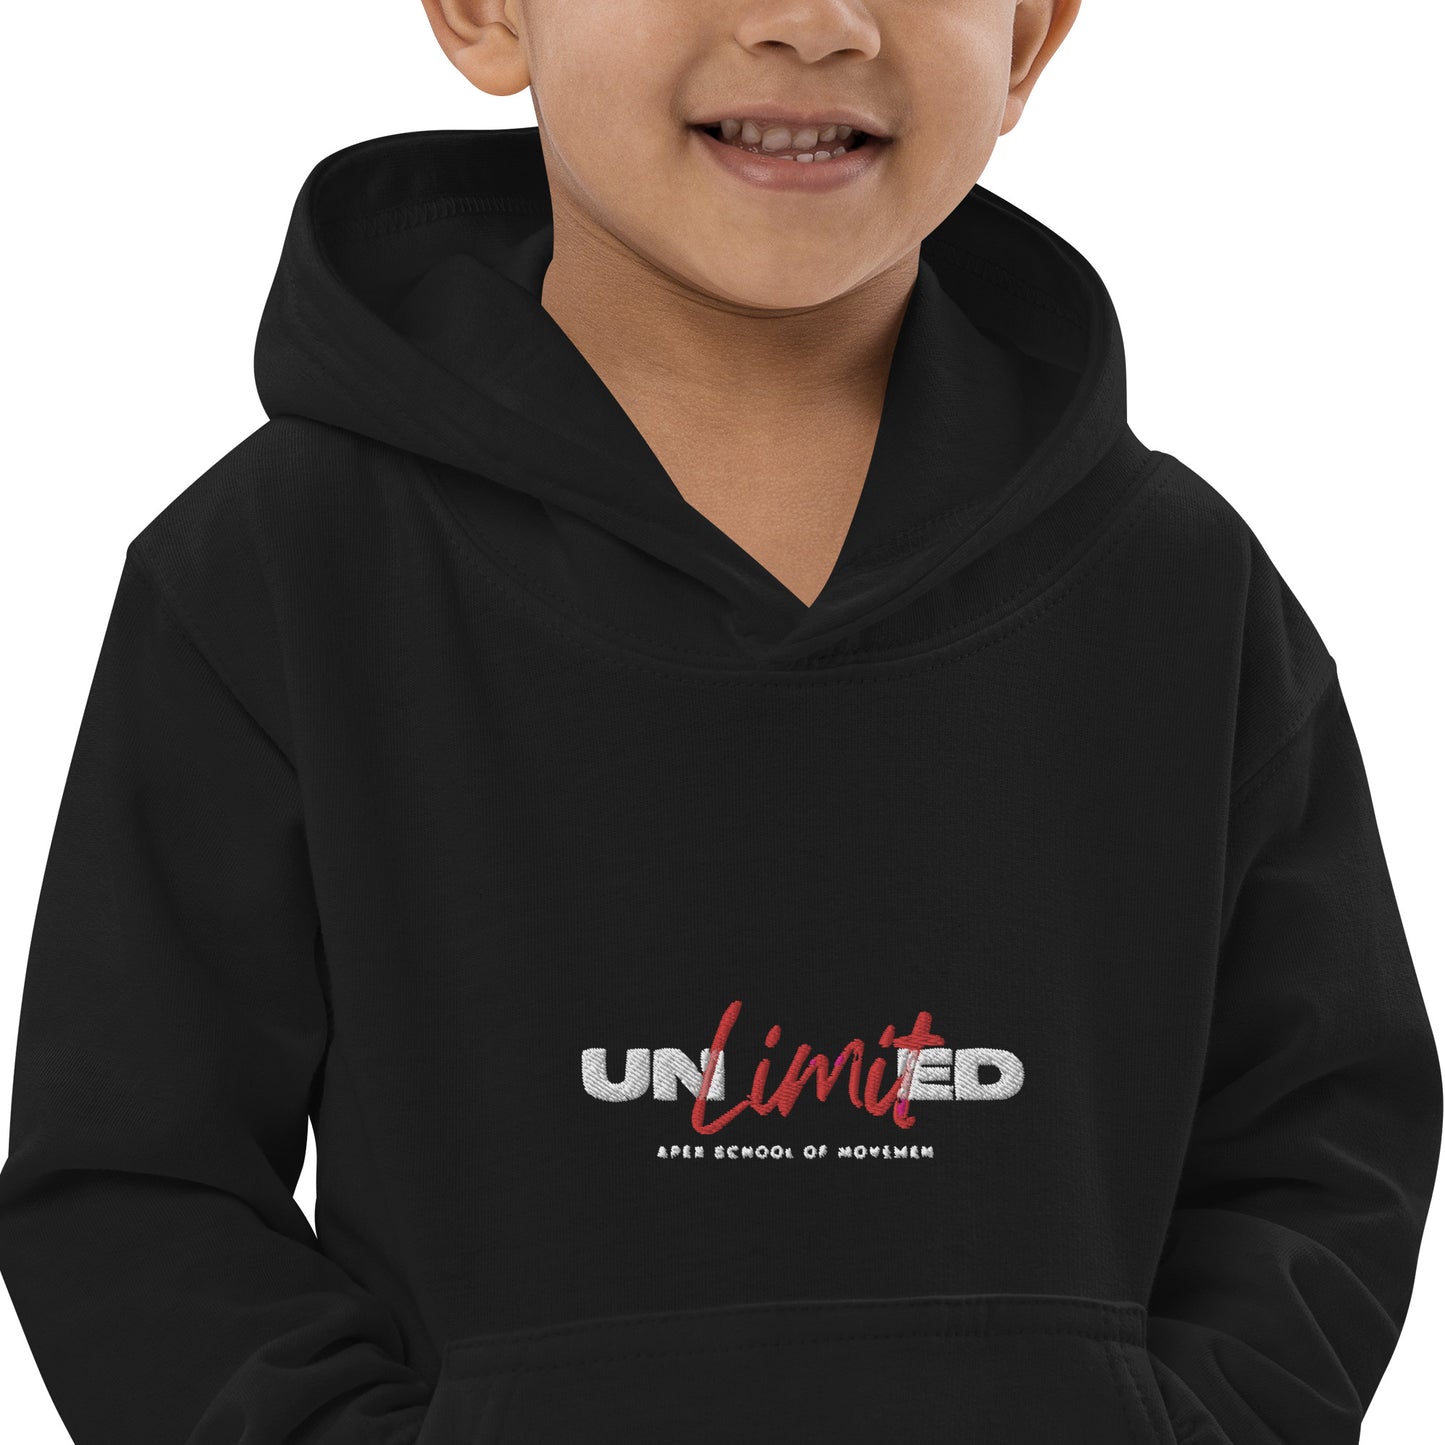 Unlimited Kids Hoodie